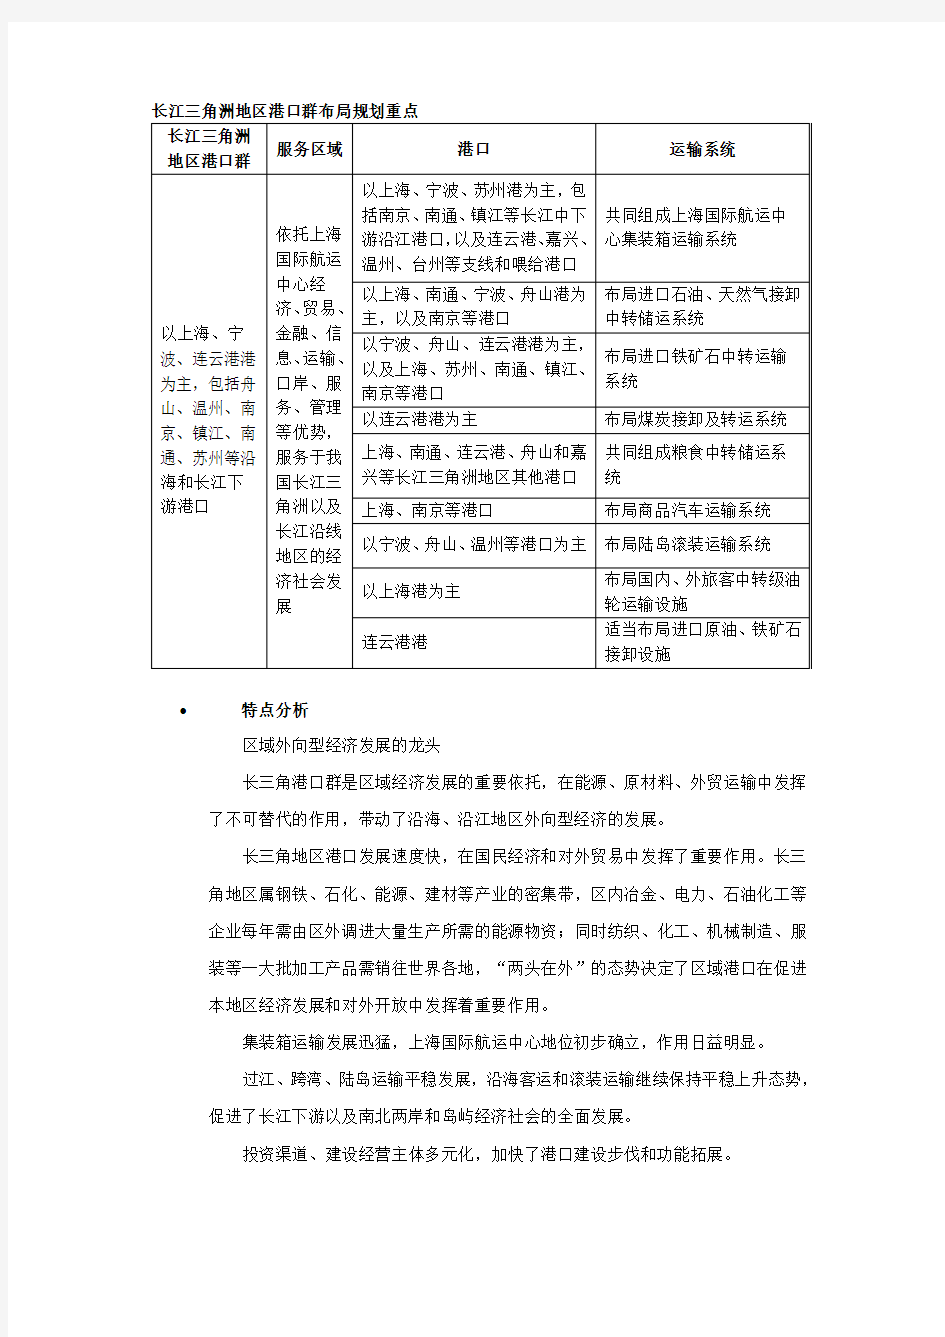 长江三角洲地区港口群布局规划重点